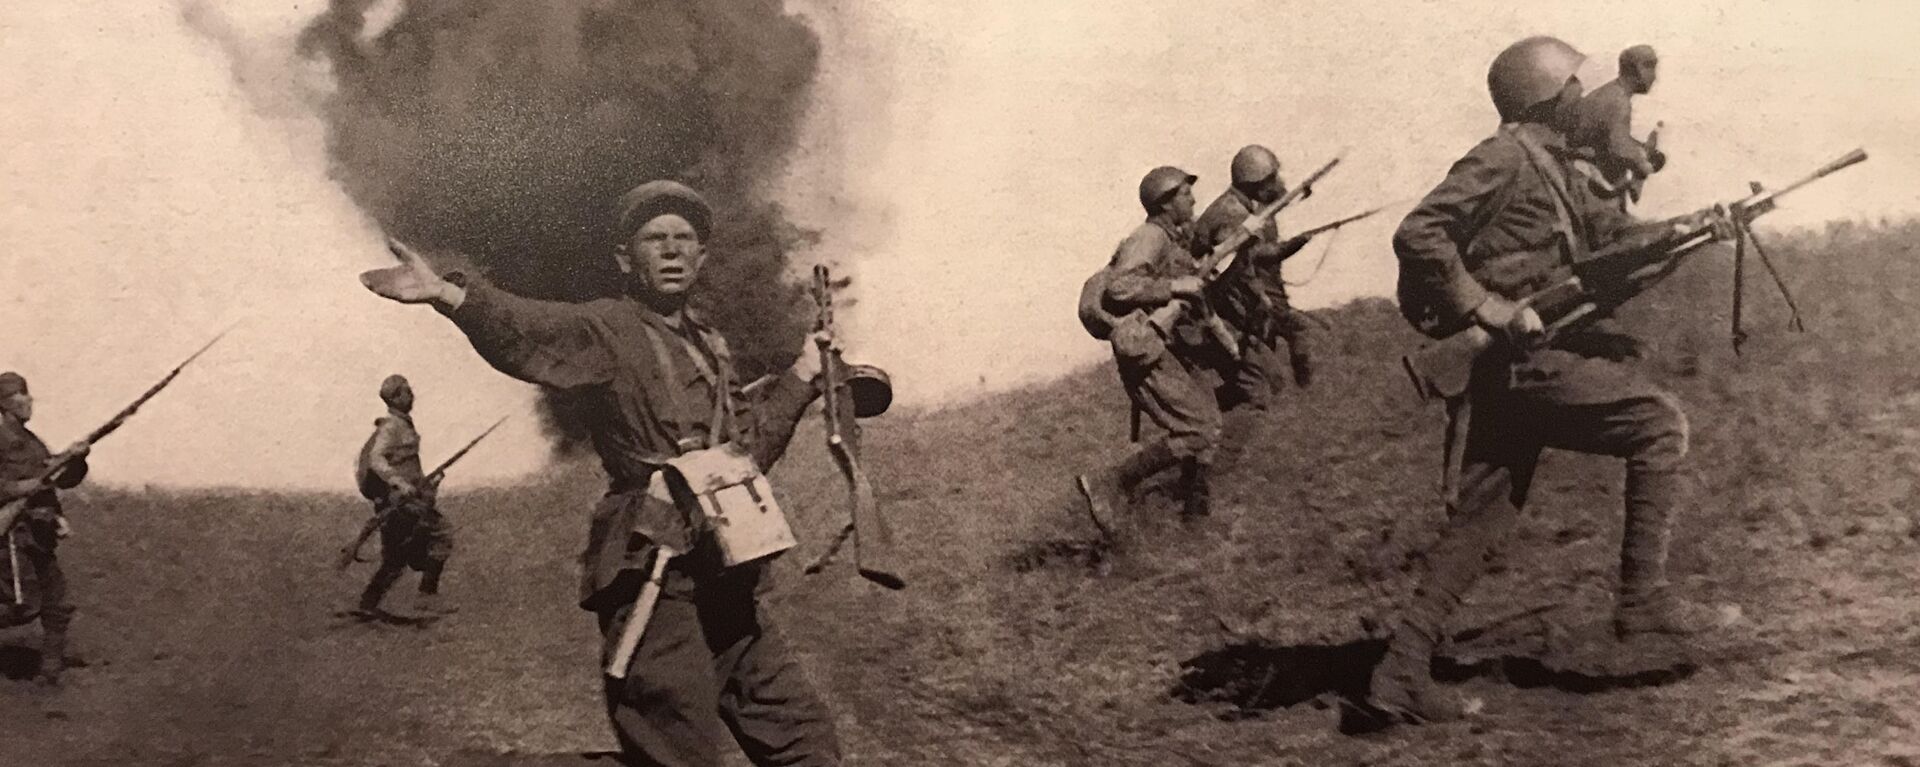 Borbena dejstva Crvene armije na prilazima Staljingradu  - Sputnik Srbija, 1920, 20.12.2020